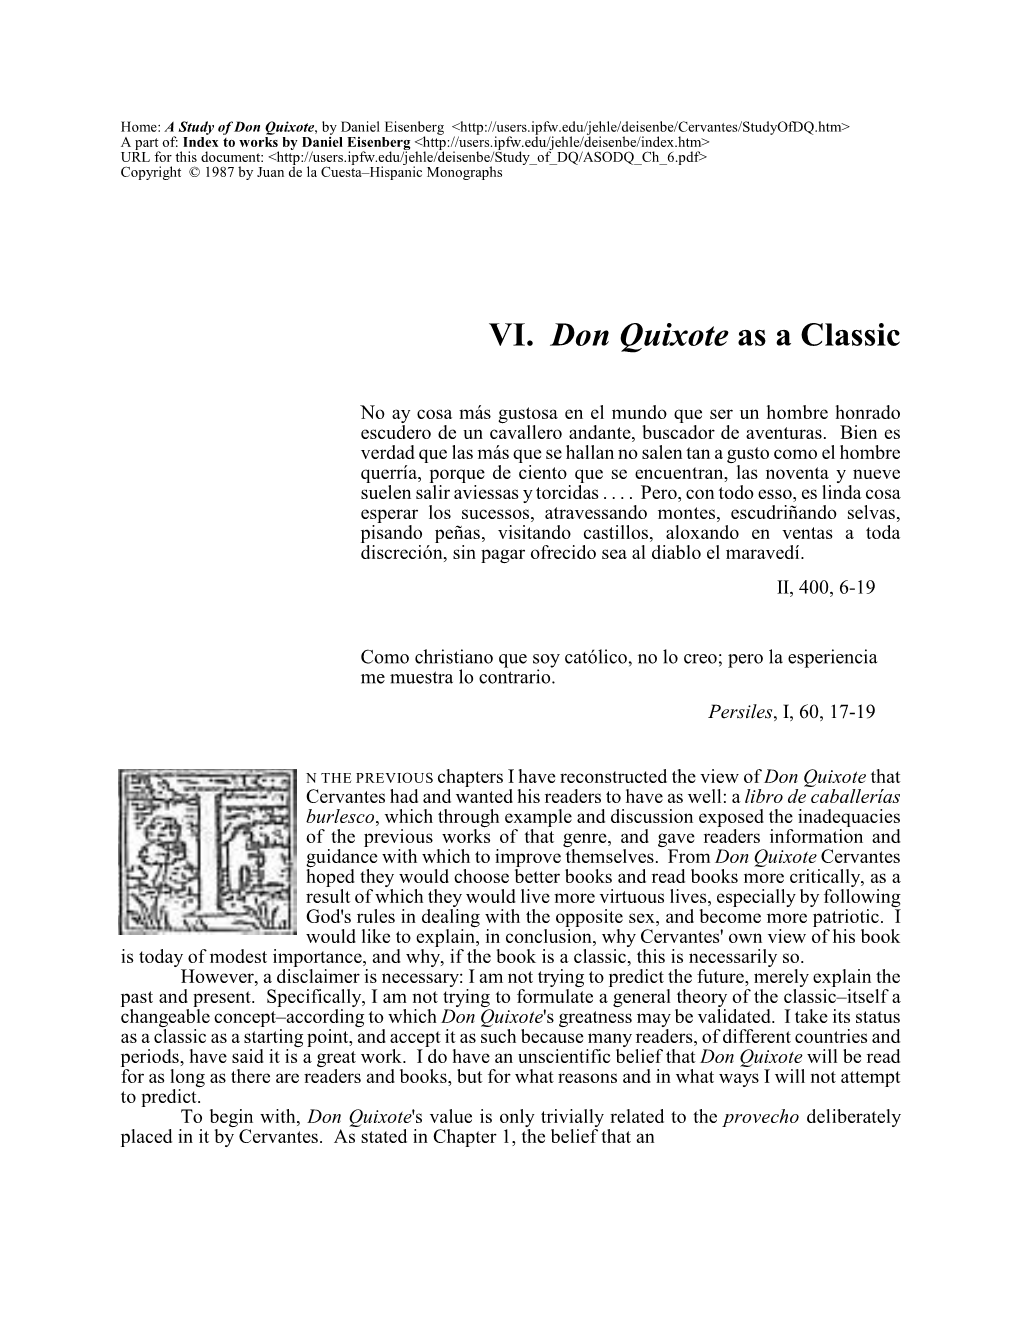 A Study of Don Quixote: Ch. VI, Don Quixote As a Classic